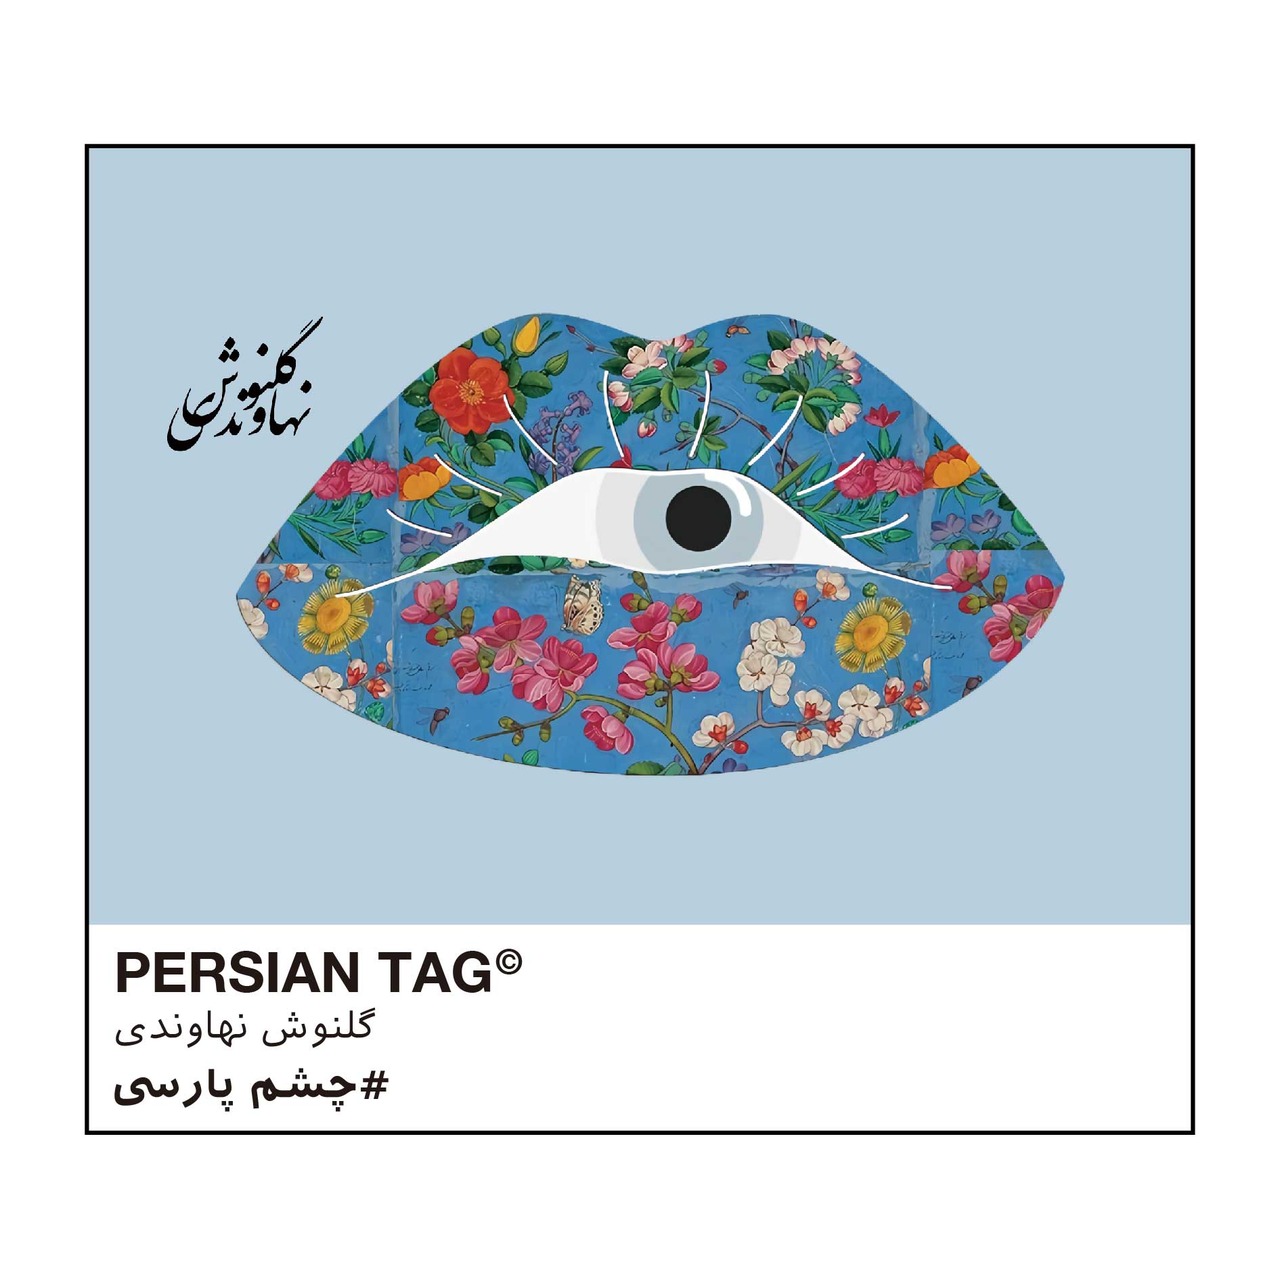 Eye of Persia by Golnoosh  / エコバッグ